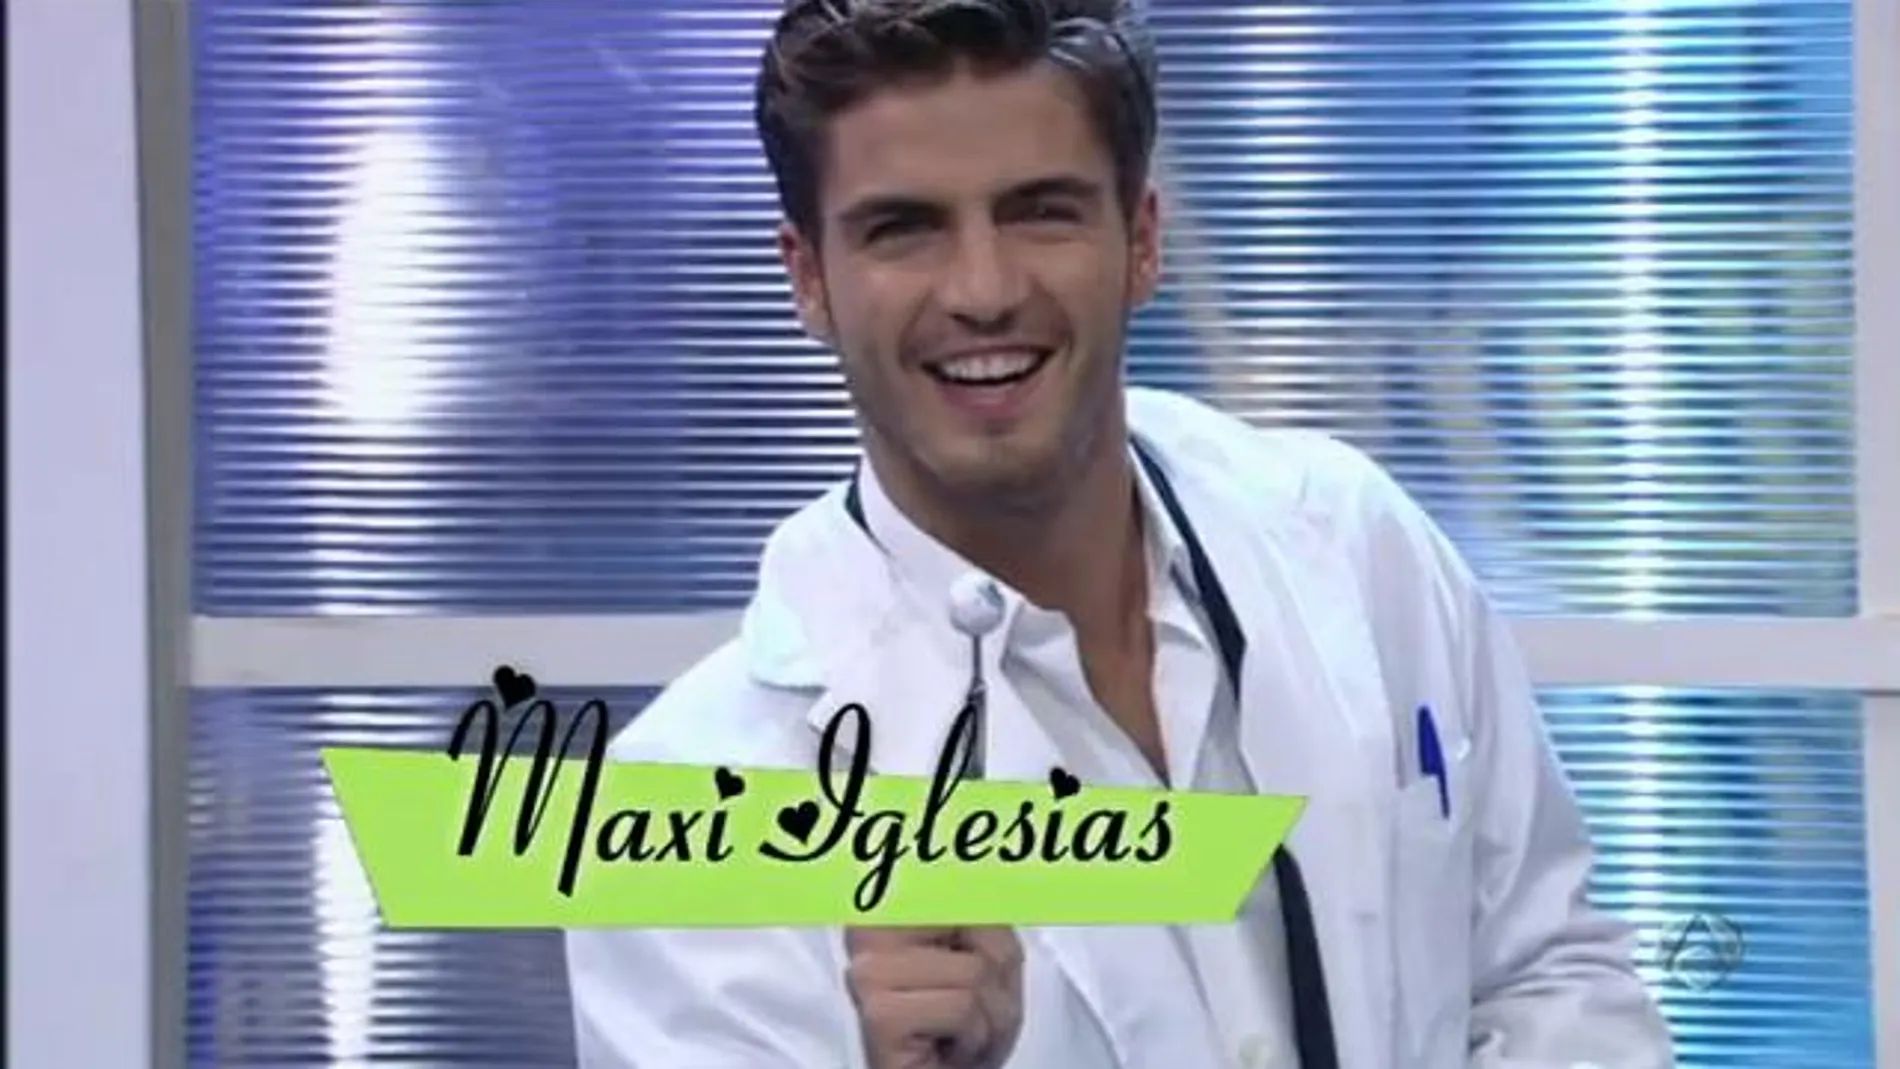 Maxi Iglesias